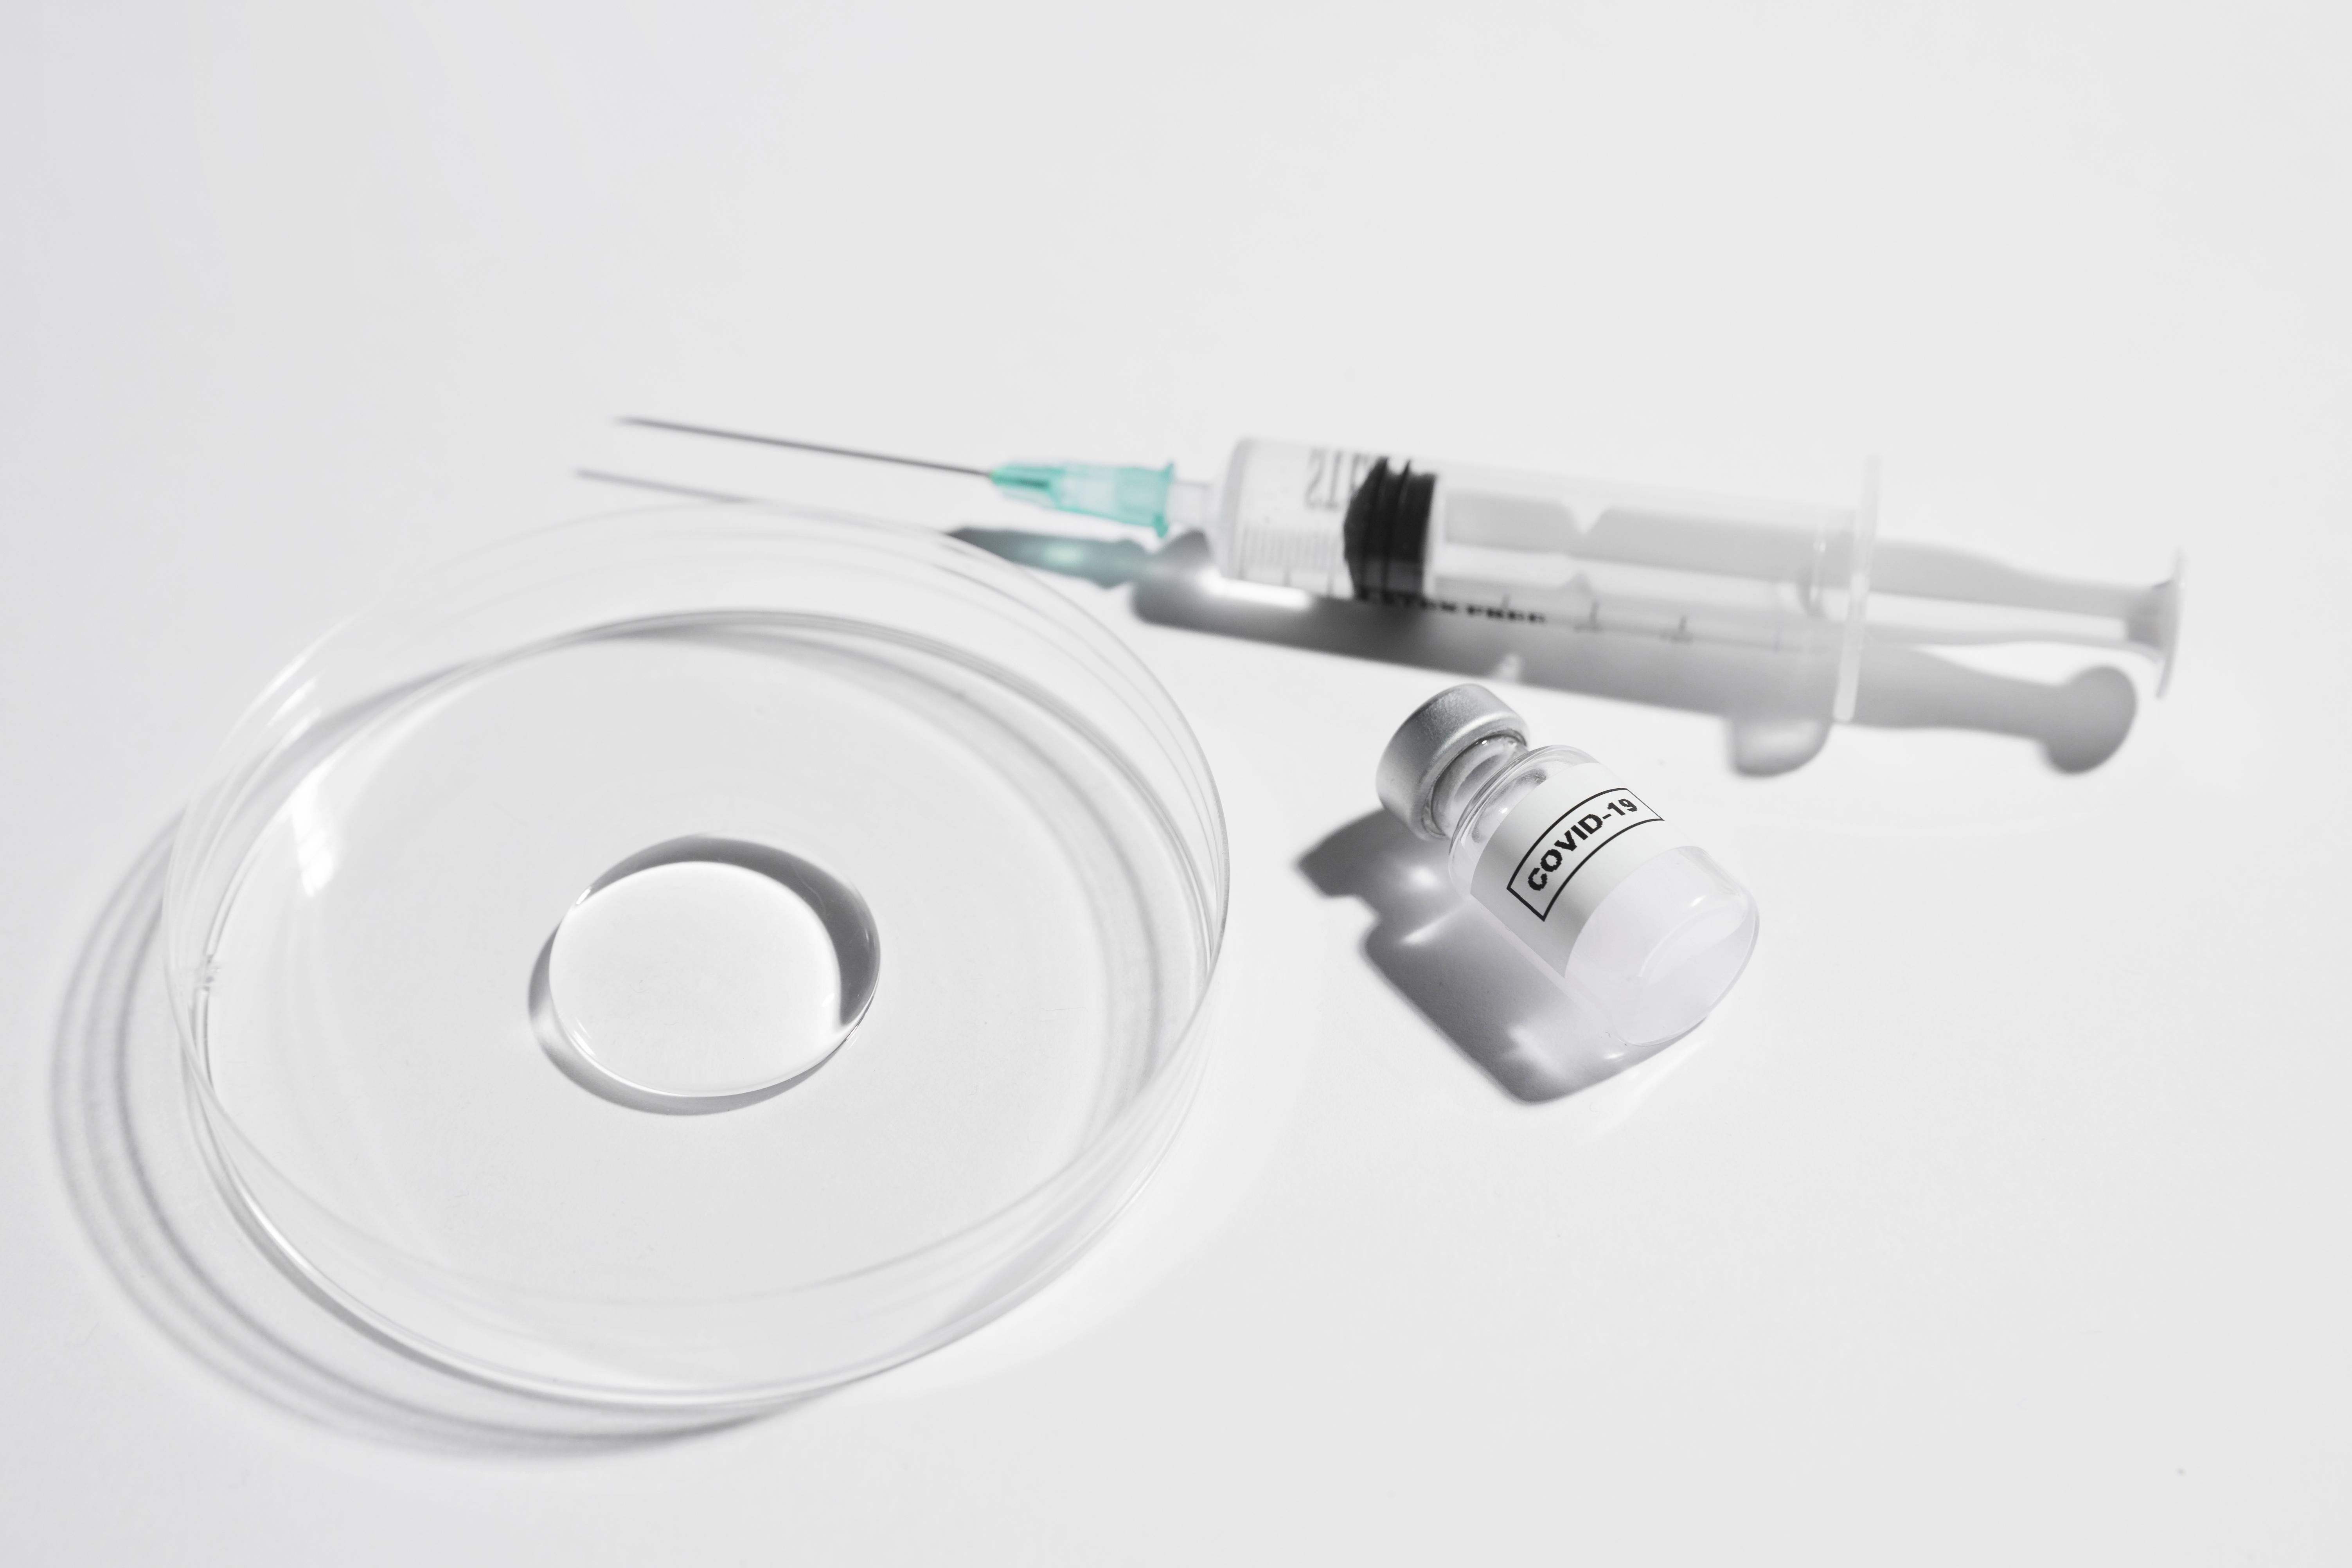 Syringe, medicine bottle, and a lab glassware